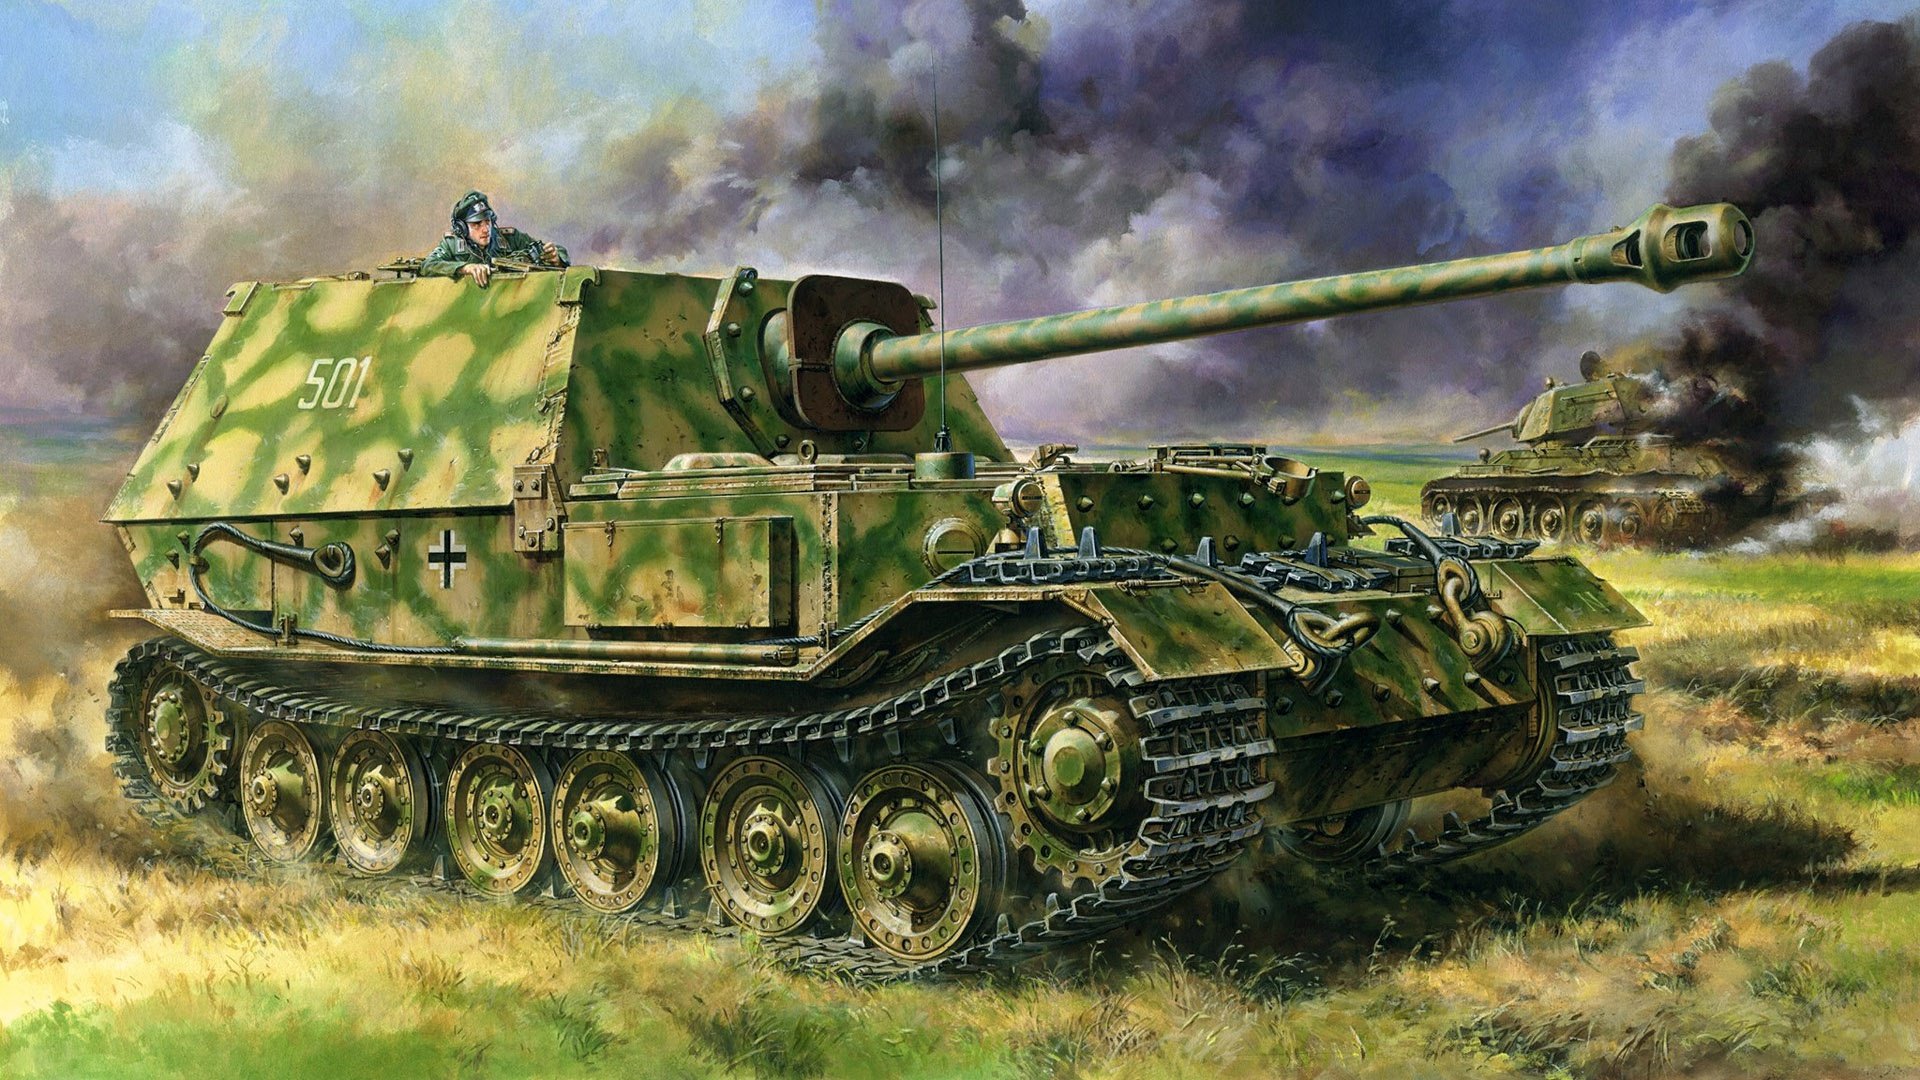 Тяжелый танк времен войны. САУ немцев второй мировой Фердинант.